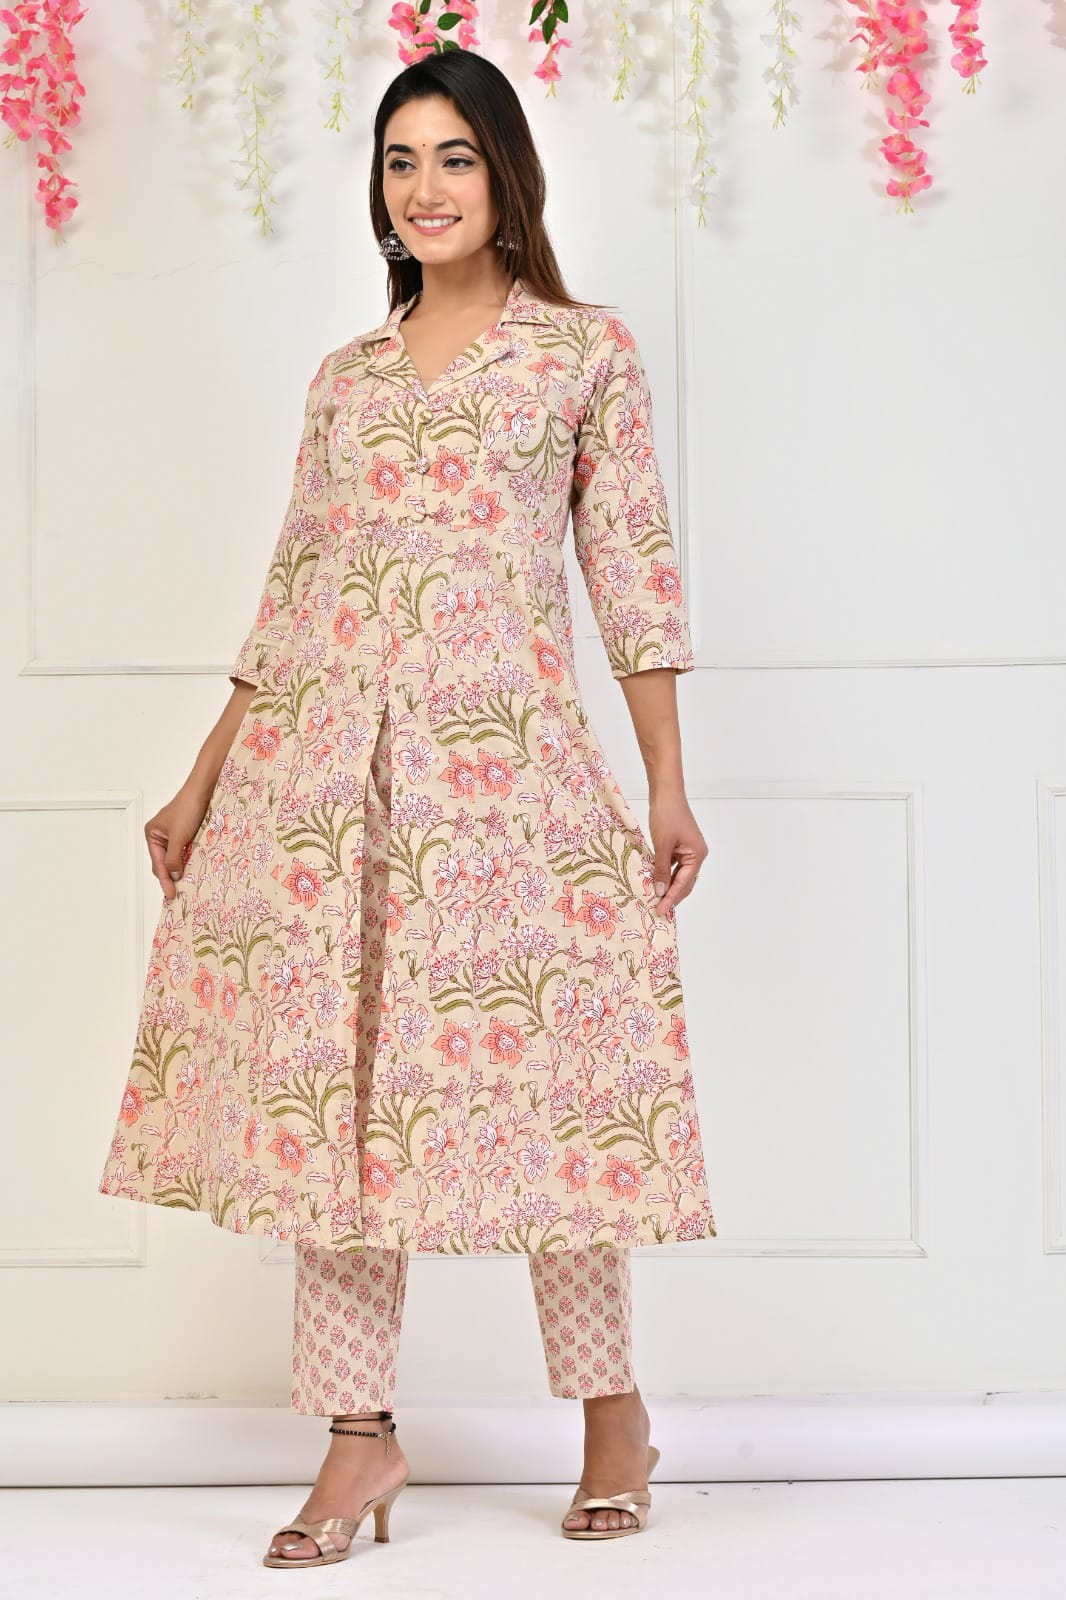 इस त्यौहार के मौके पर खरीद सकती है दिल्ली वाली फैशन स्टाइलिश कुर्तियां,  जाने इनके सुन्दर डिजाइन के बारे में